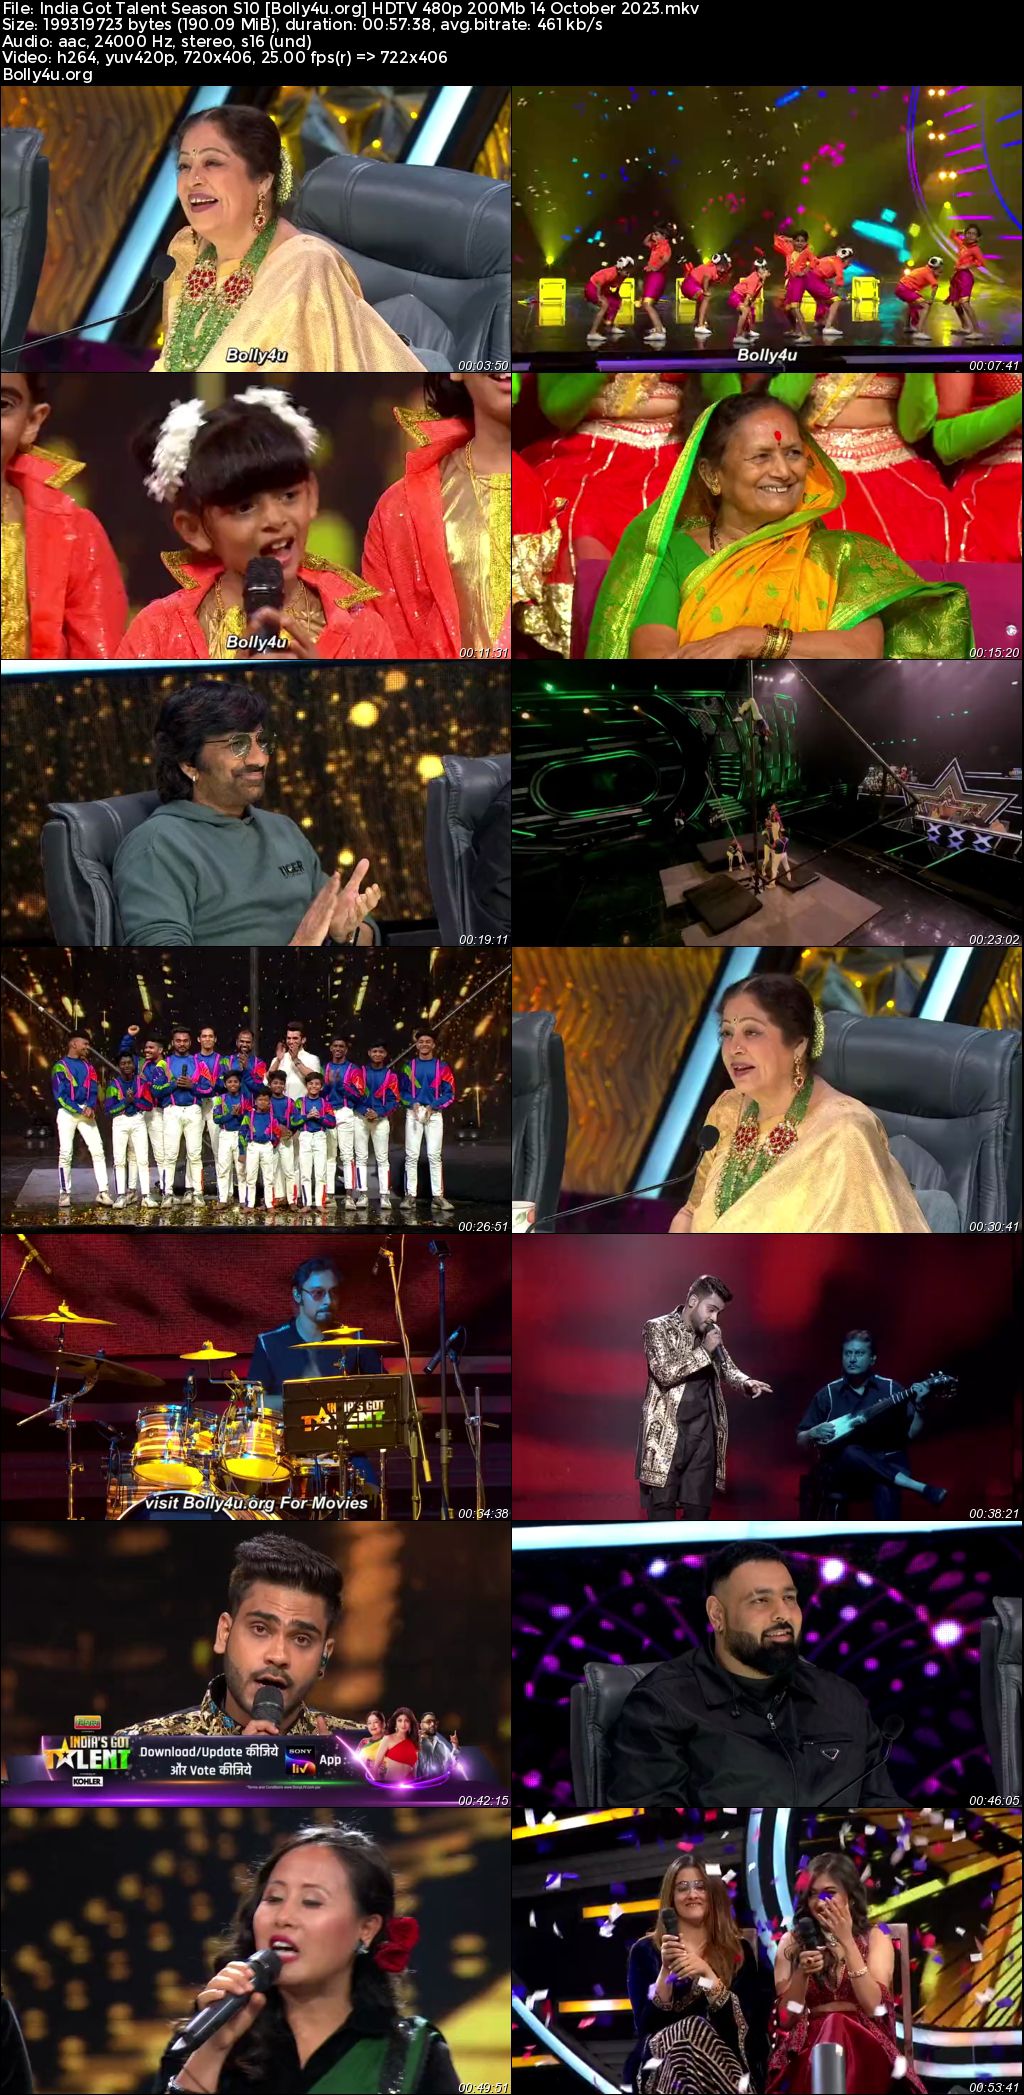 India Got Talent Season S10 HDTV 480p 200Mb 14 October 2023 Download